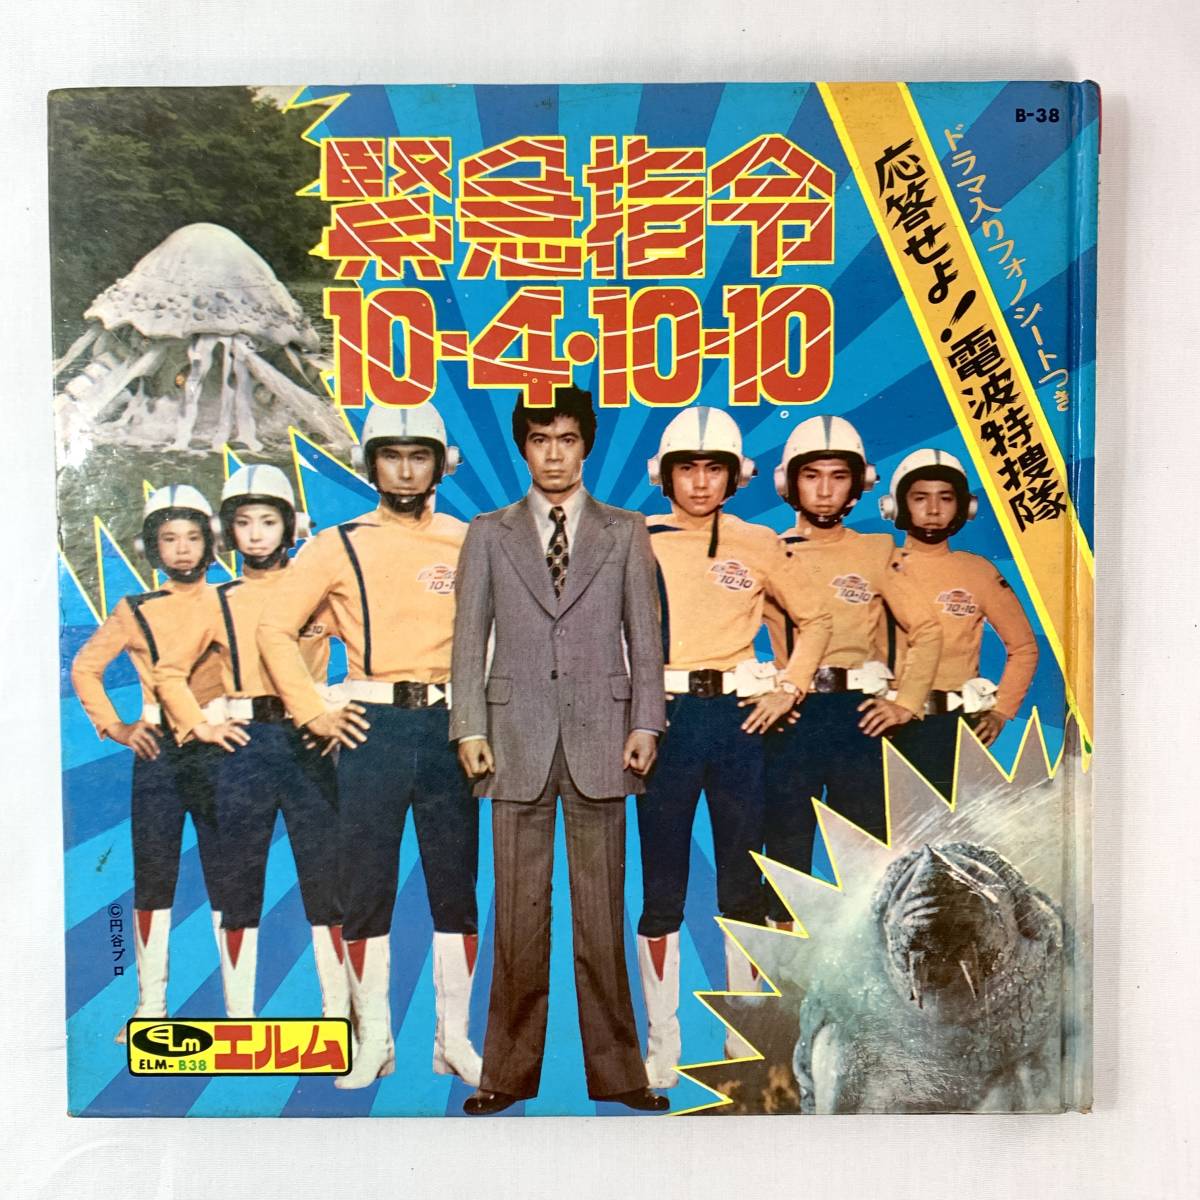 緊急指令10-4・10-10』放送50周年記念 入江ナミ 牧れい サインポスター